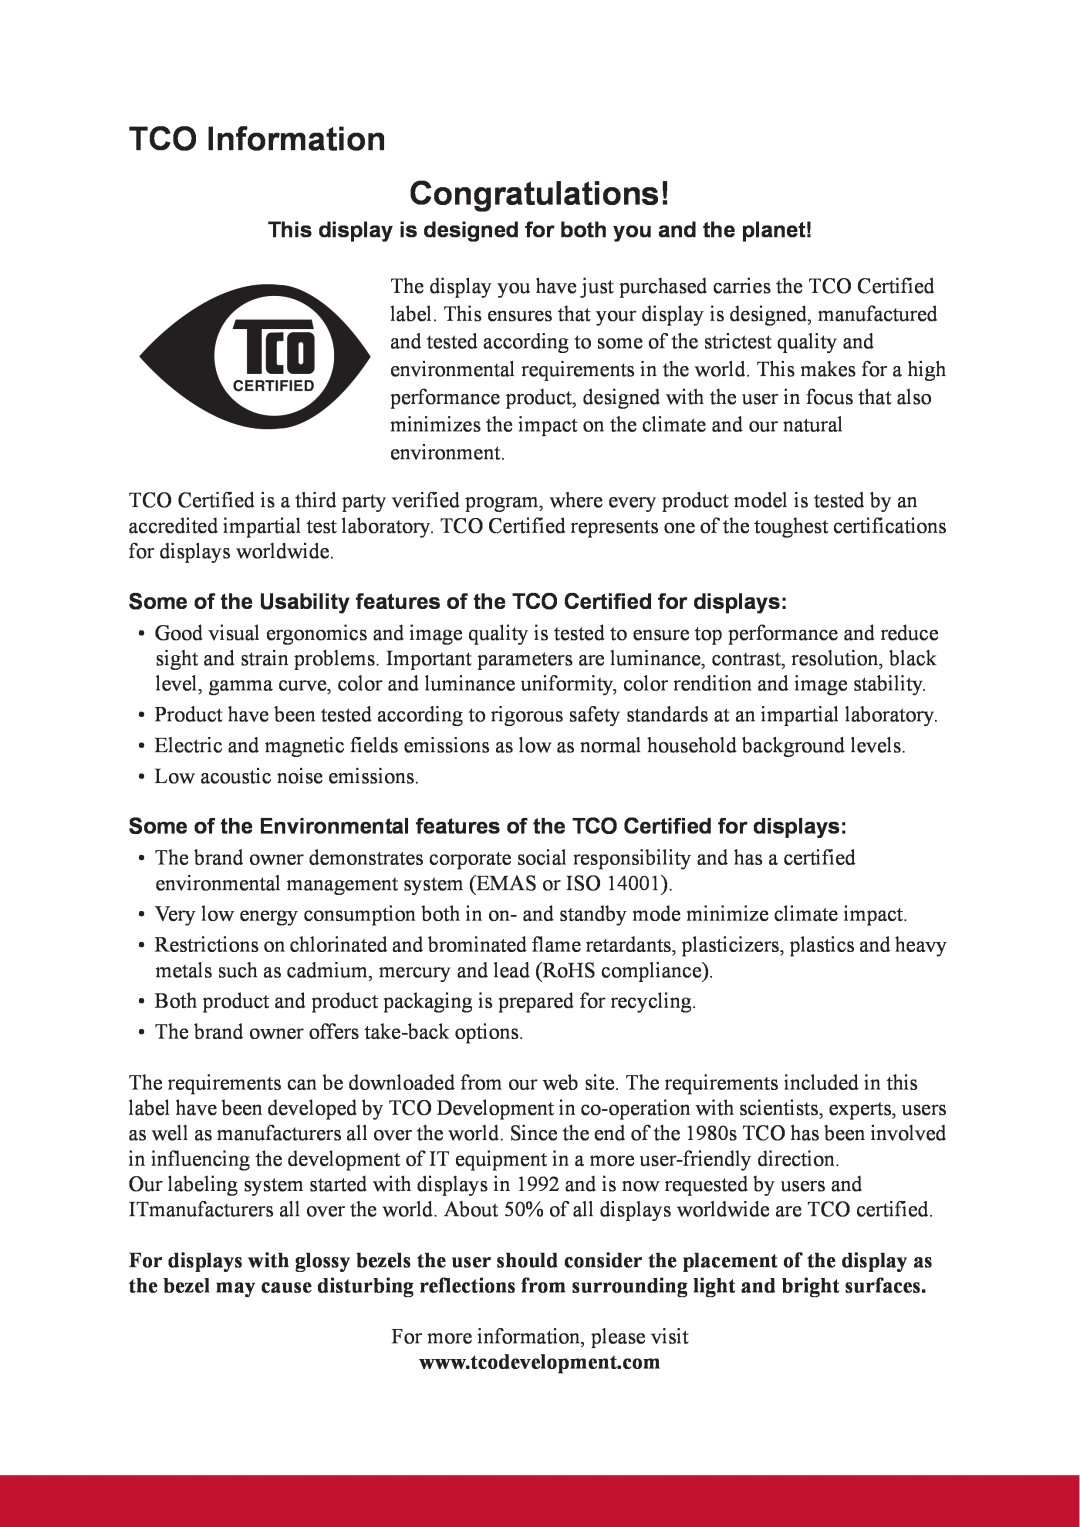 ViewSonic TD2220 warranty TCO Information Congratulations 